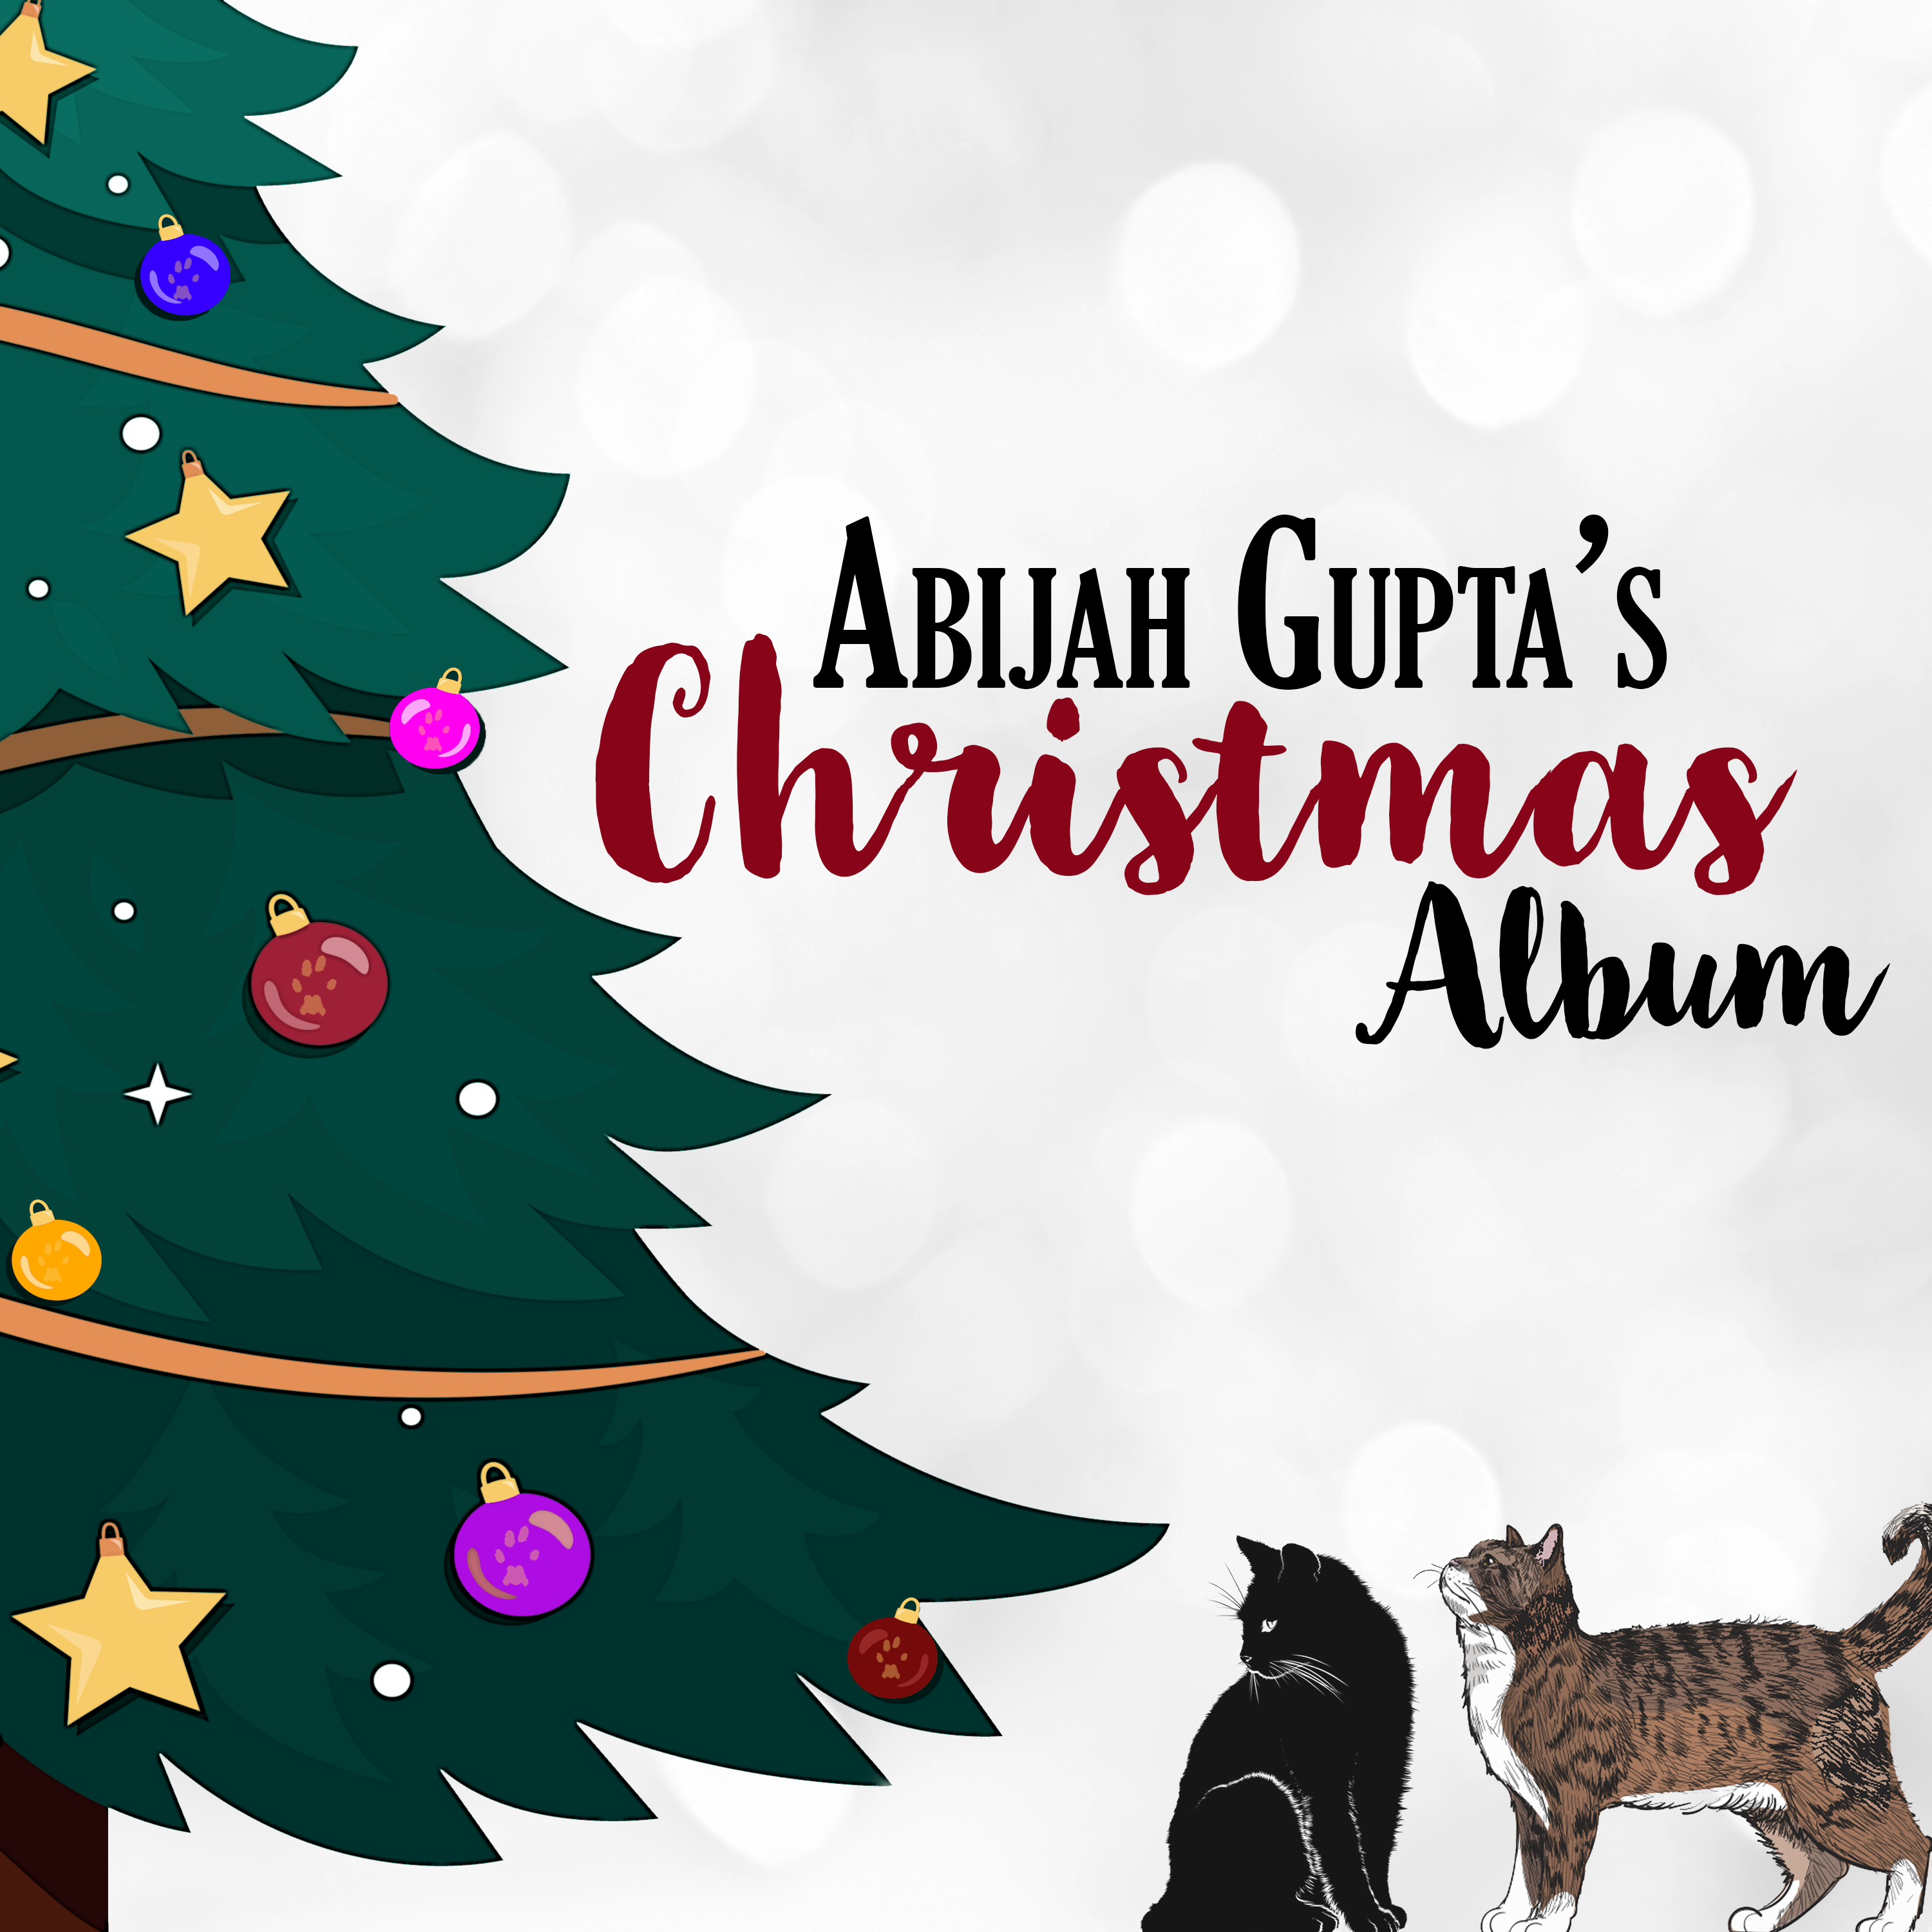 Abijah Gupta's Christmas Album